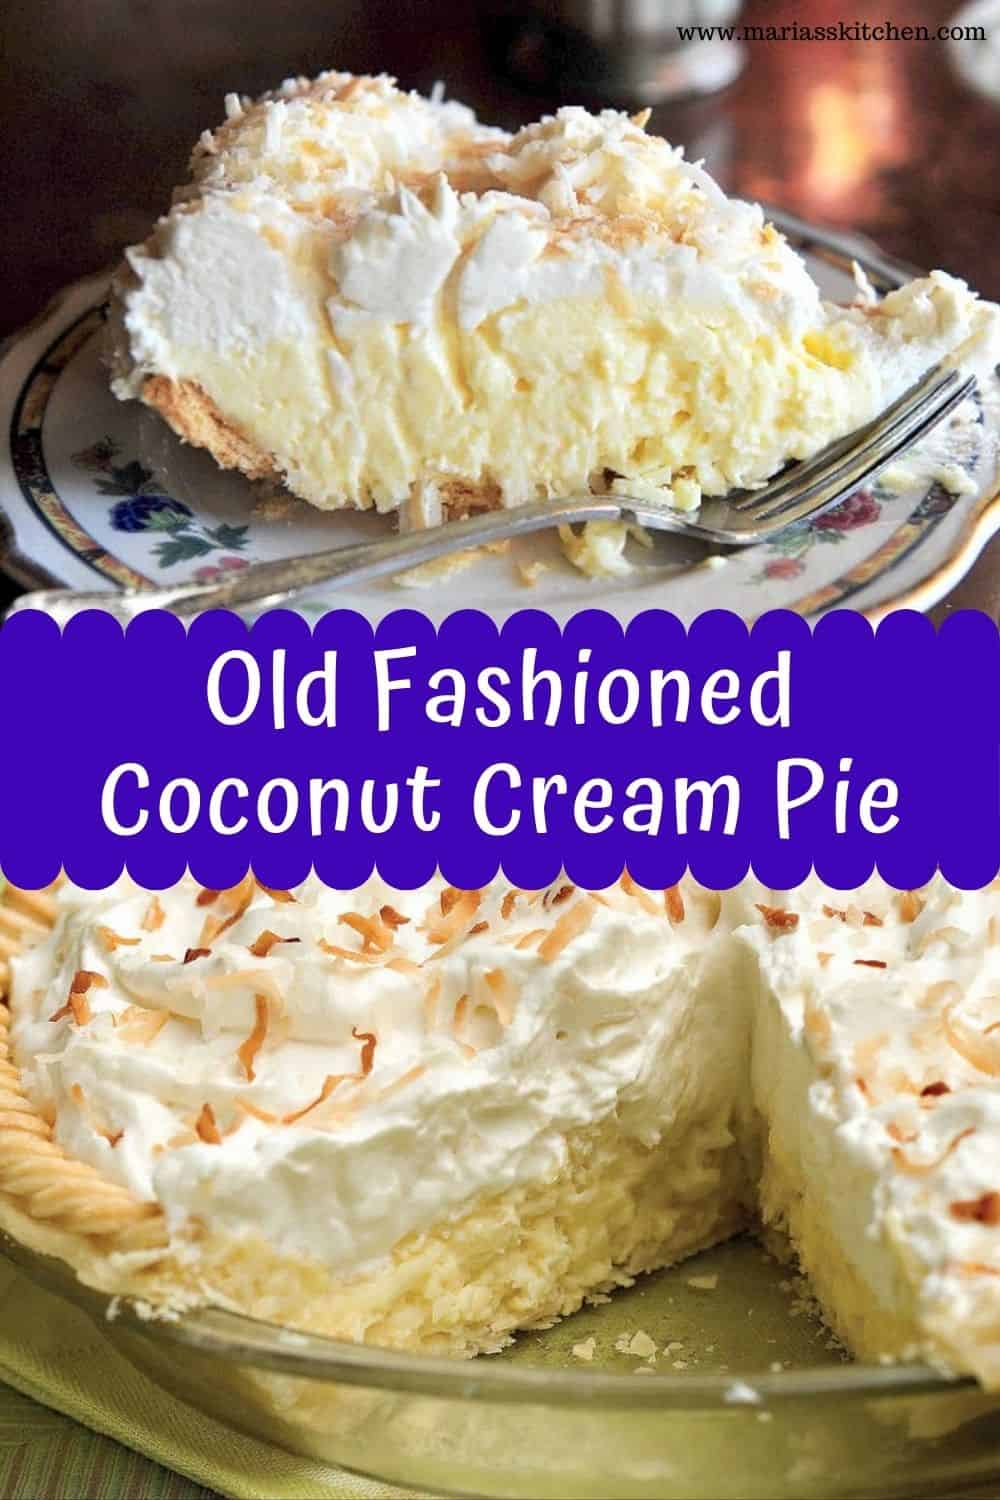 Delicious Old Fashioned Coconut Cream Pie - Maria's Kitchen